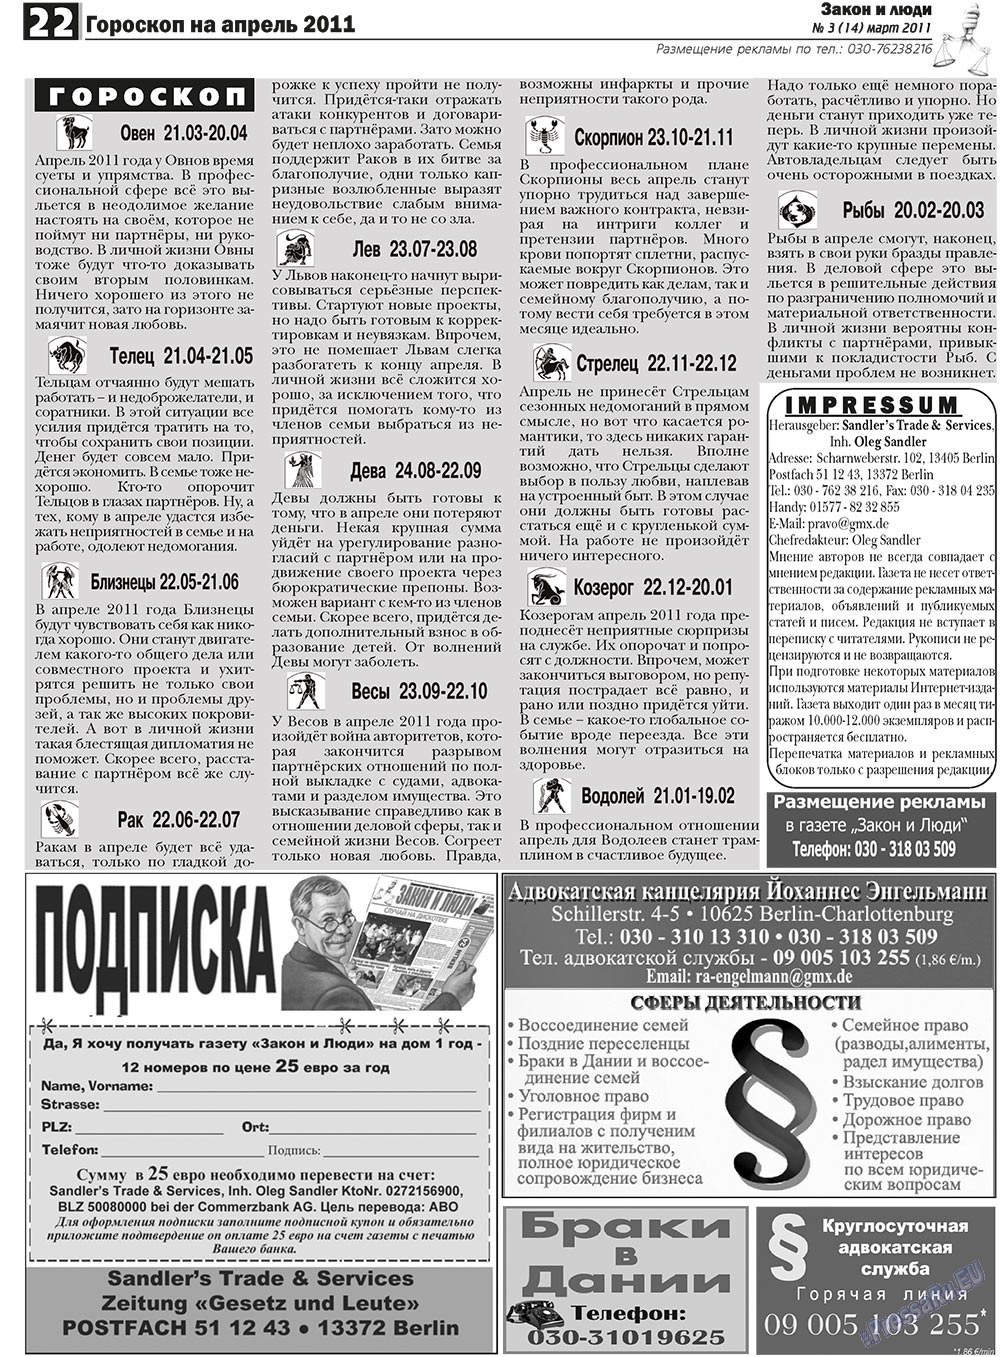 Закон и люди, газета. 2011 №3 стр.22